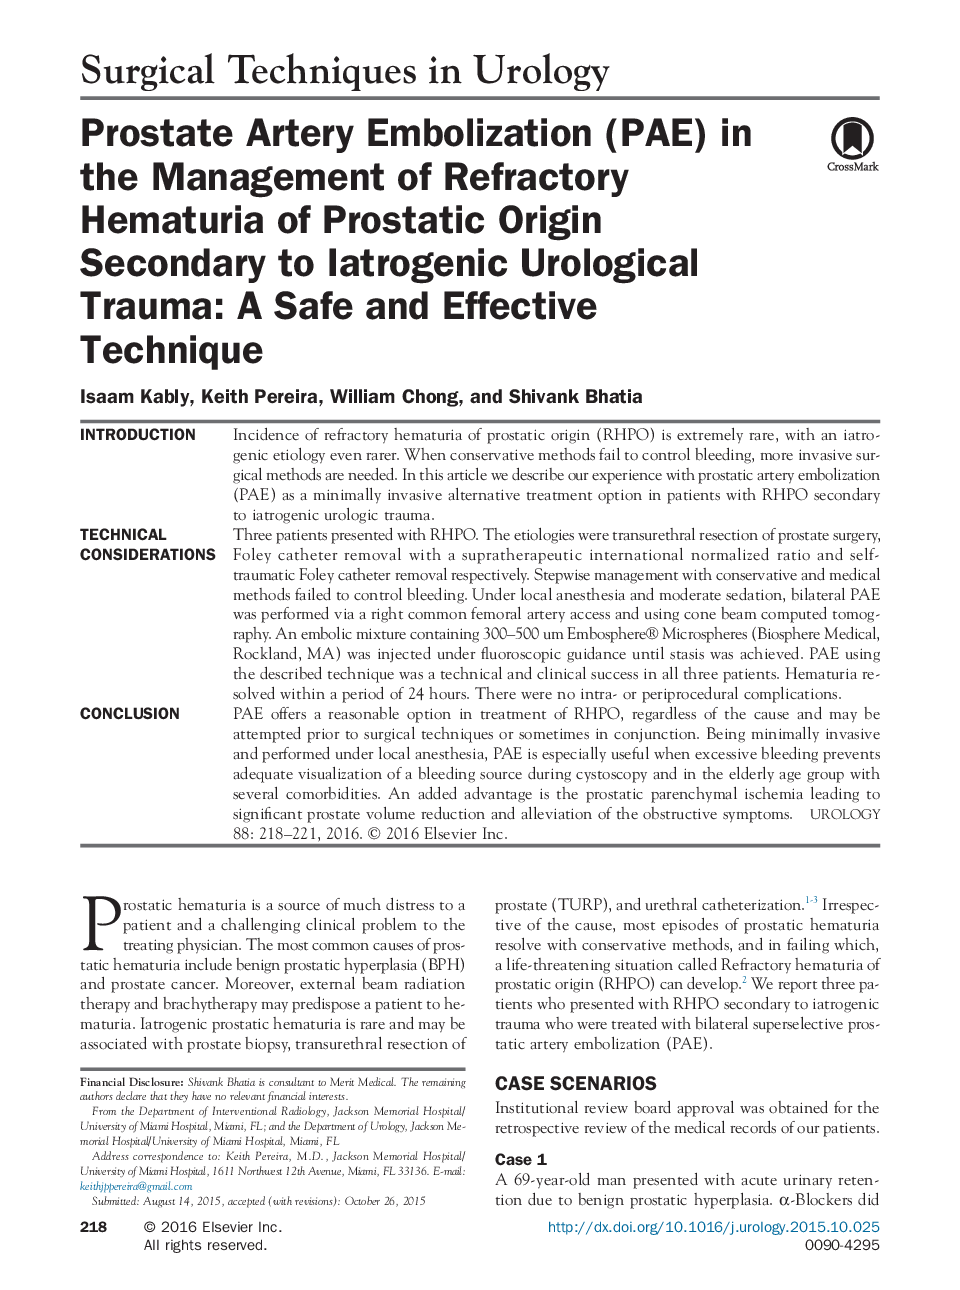 آمبولیزاسیون عروق پروستات (PAE) در مدیریت هماچوری نسوز منبع پروستات بدلیل ترومای اورولوژی ایاتروژنیک: تکنیک بی خطر و موثر